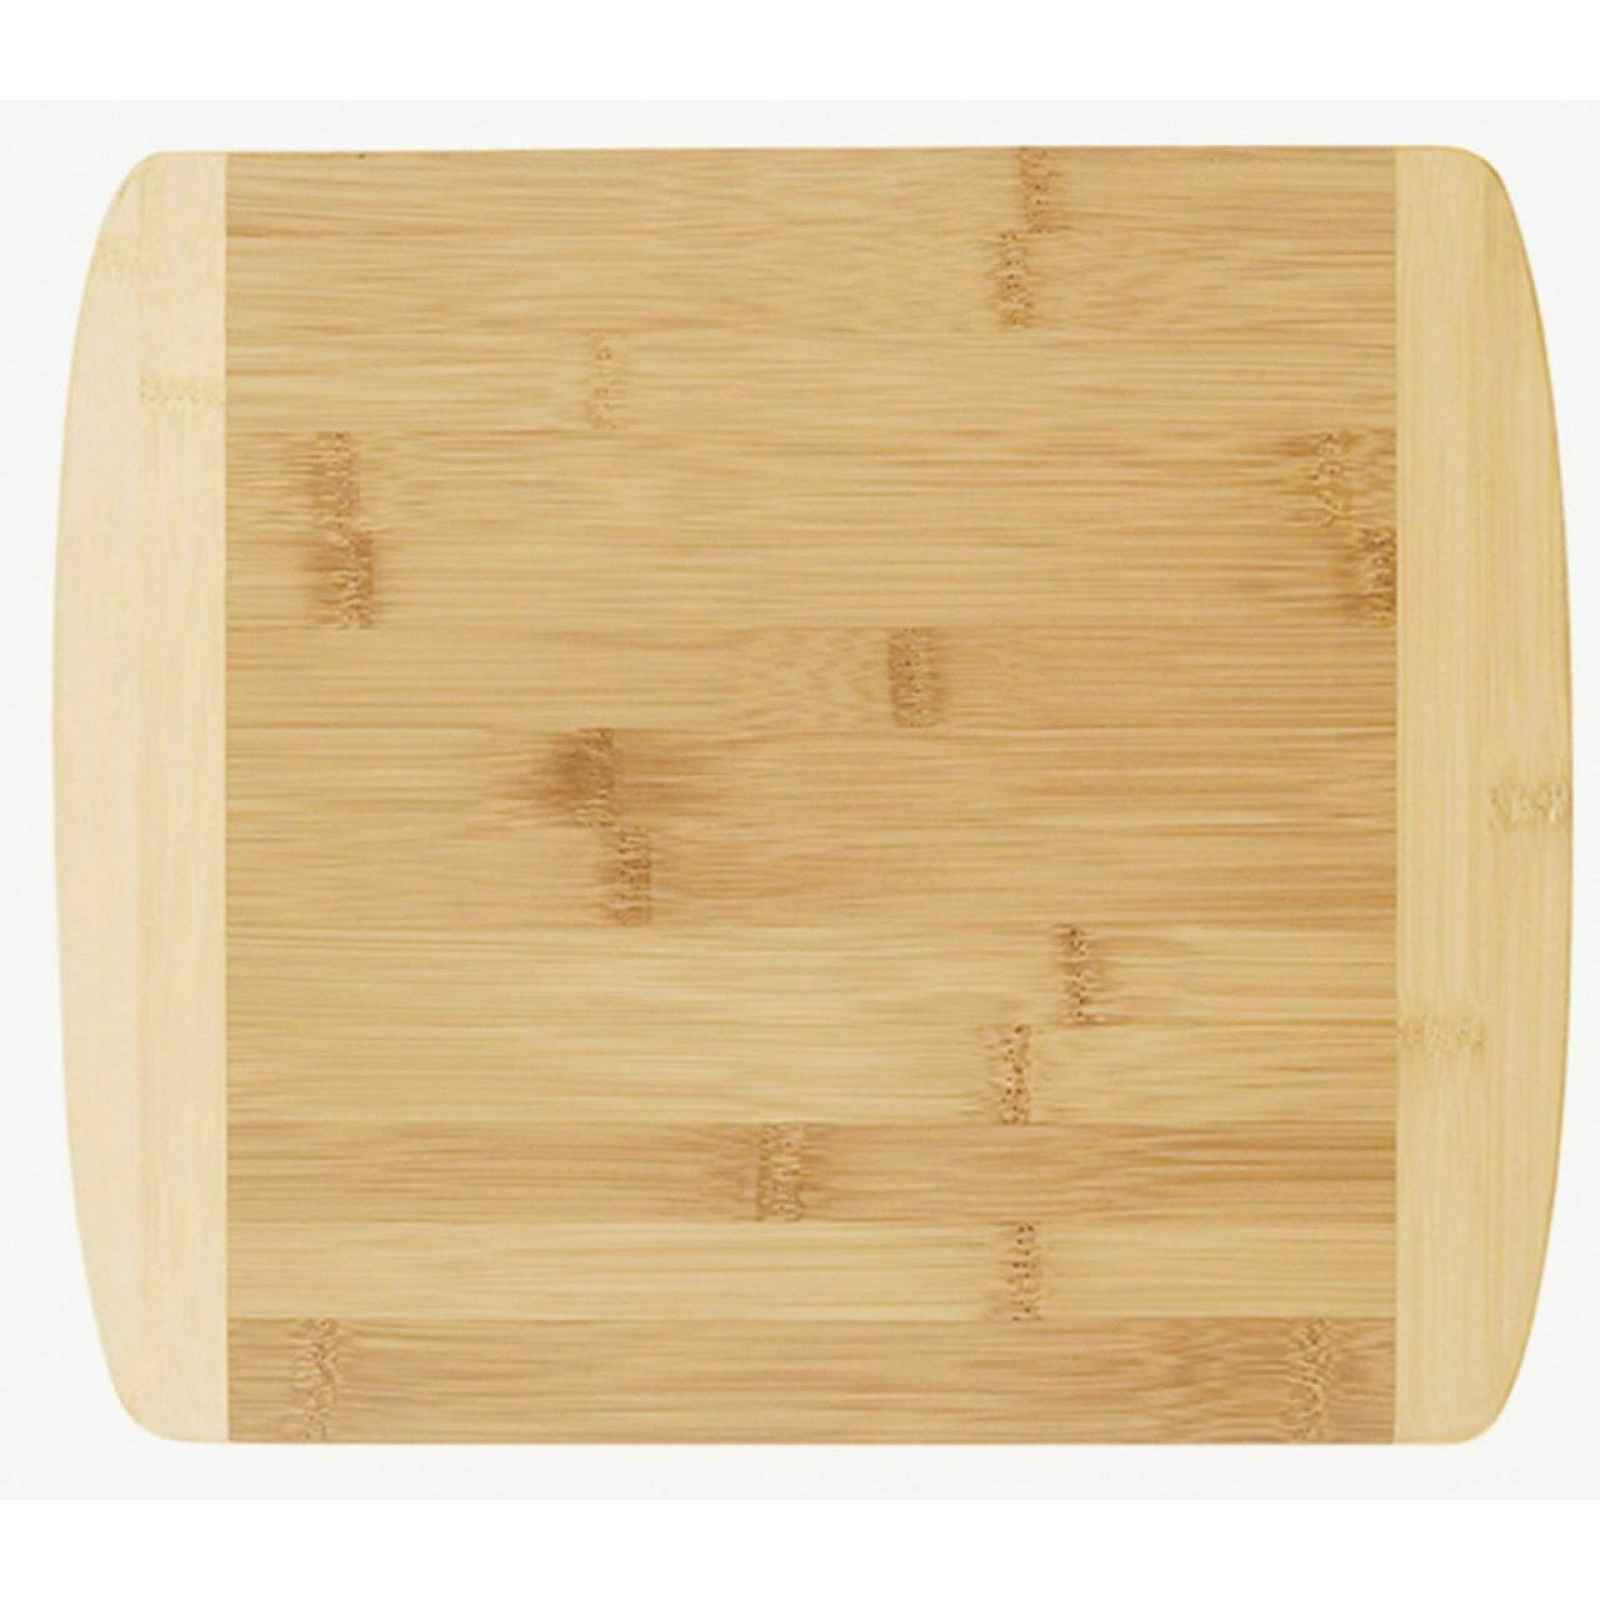 Kuchyňské prkénko Bambus 34x29 cm, dvoubarevné